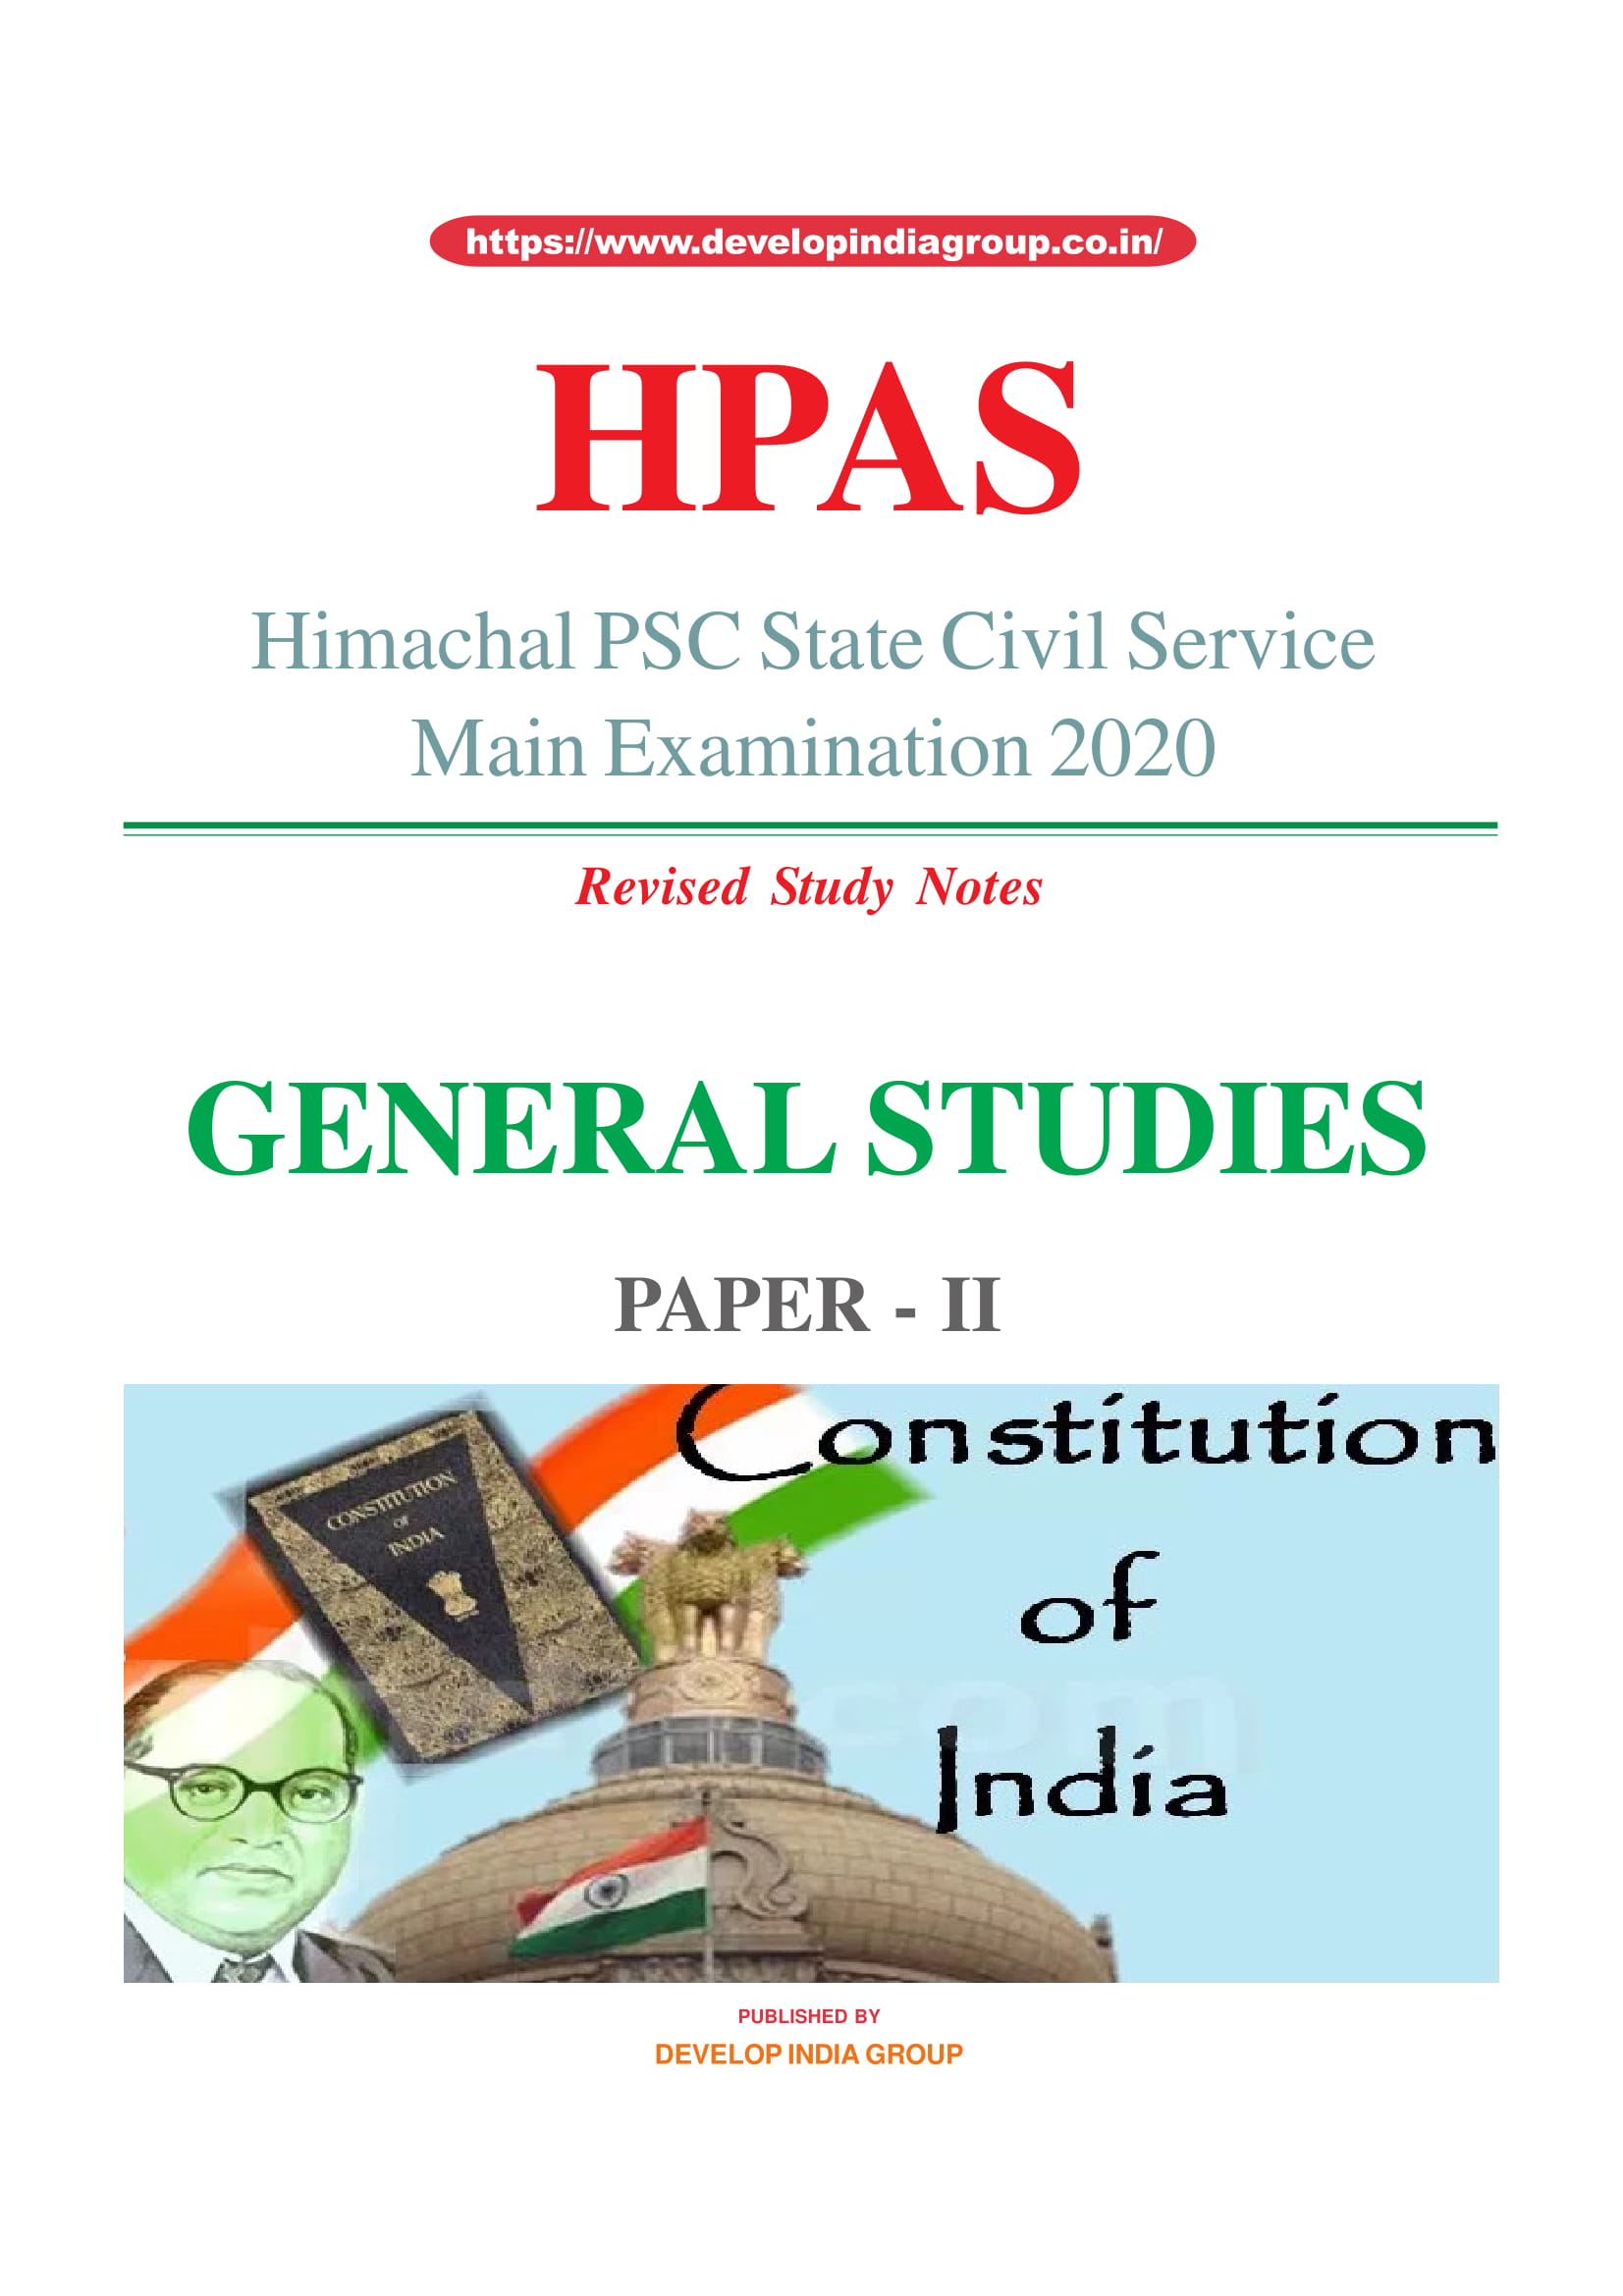 HPAS Main General Studies Paper 2